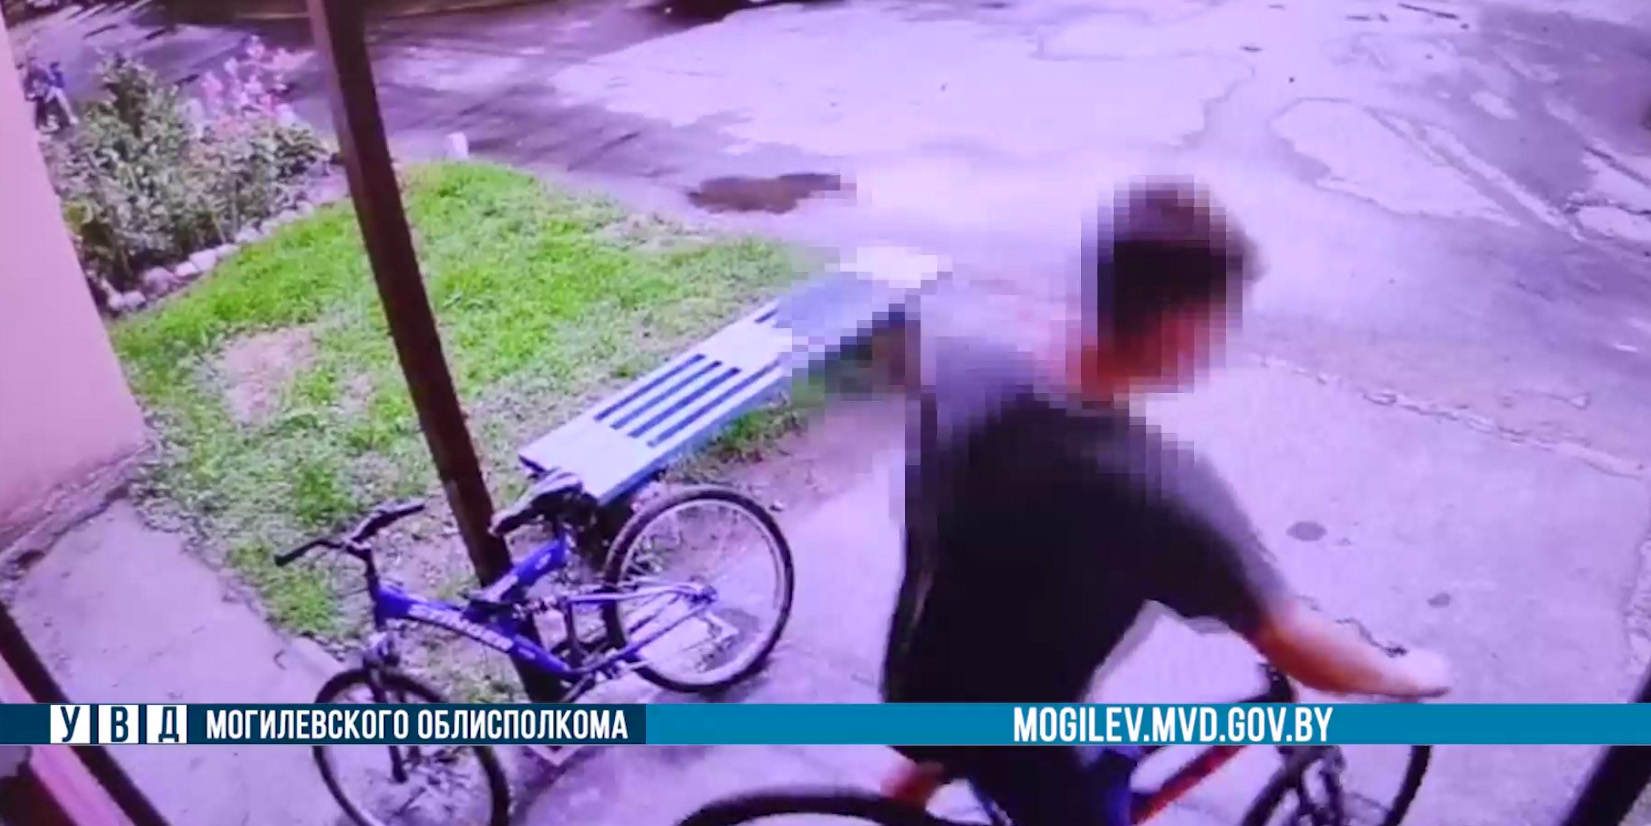 Пьяный могилевчанин за день похитил два велосипеда